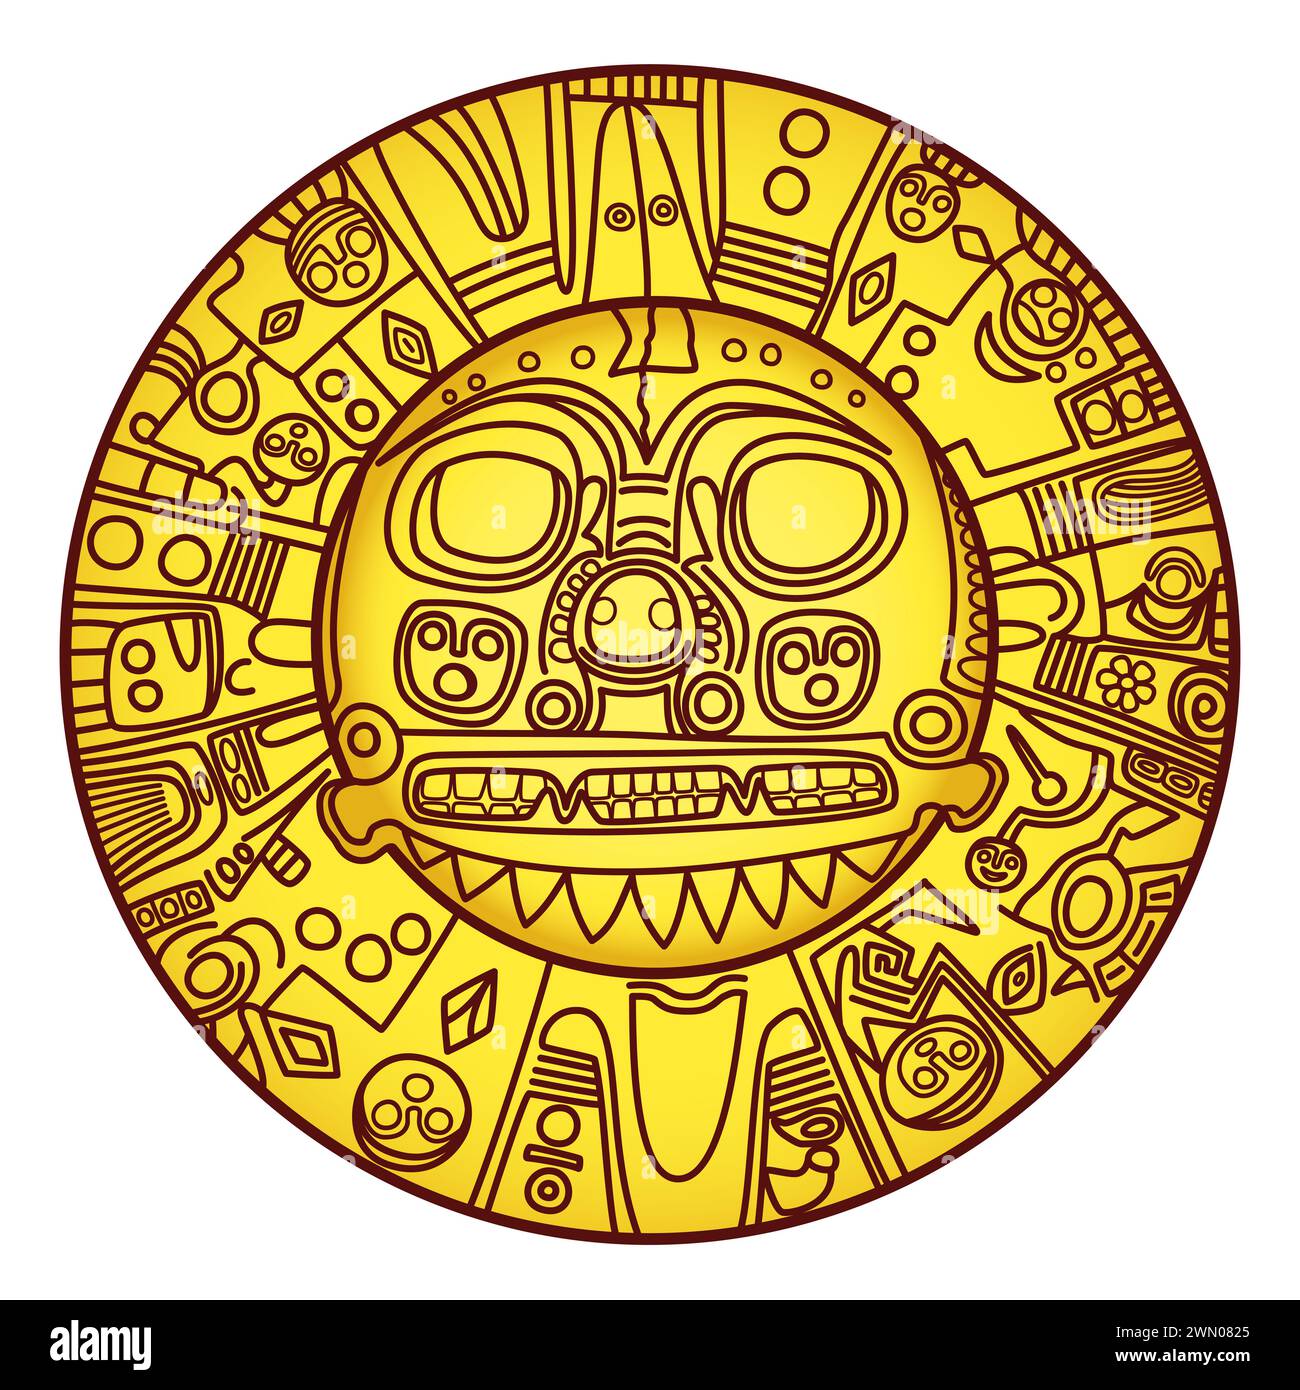 Goldene Sonne von Echenique. Prähispanische goldene Platte von unbekannter Bedeutung, die vielleicht den Sonnengott Inti repräsentiert. Getragen als Brustpanzer von Inka-Linealen. Stockfoto